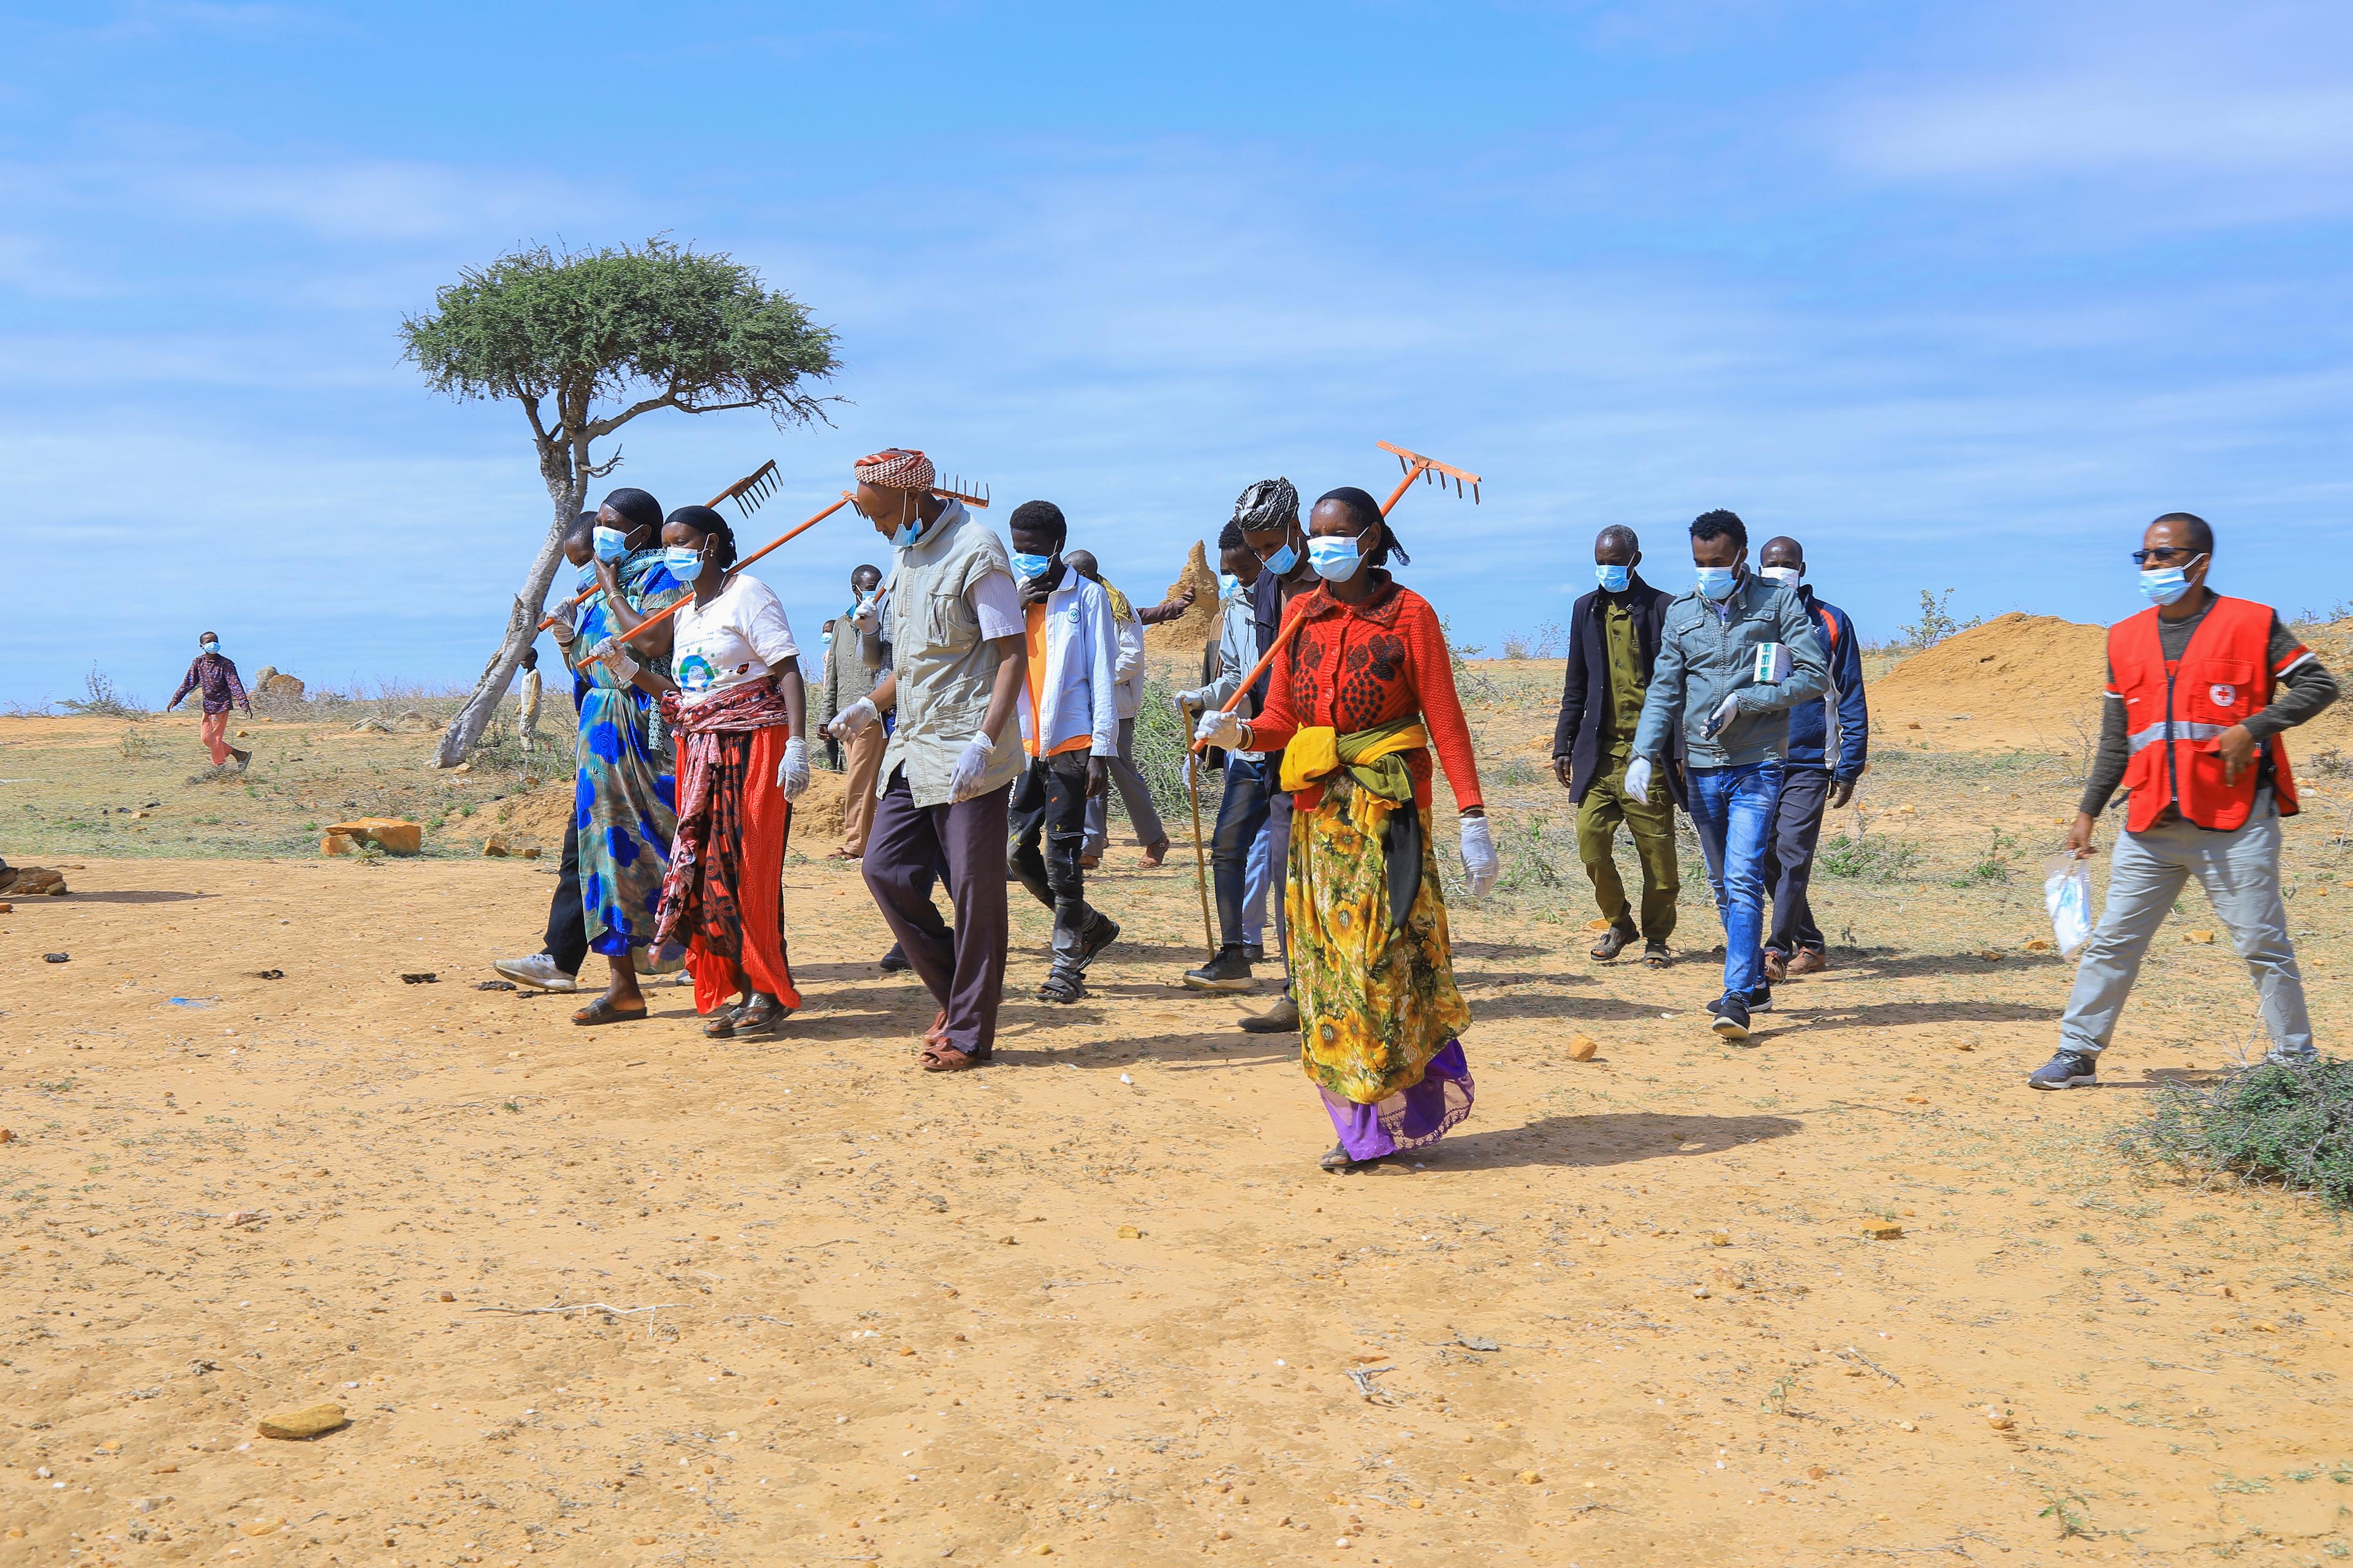 Des volontaires de la Croix-Rouge, dont Hacure, 37 ans, et Borte, 56 ans, en route pour se débarrasser du bétail mort dans la zone de Borena, Moyale (Éthiopie). Ils sont munis de râteaux et portent des masques.